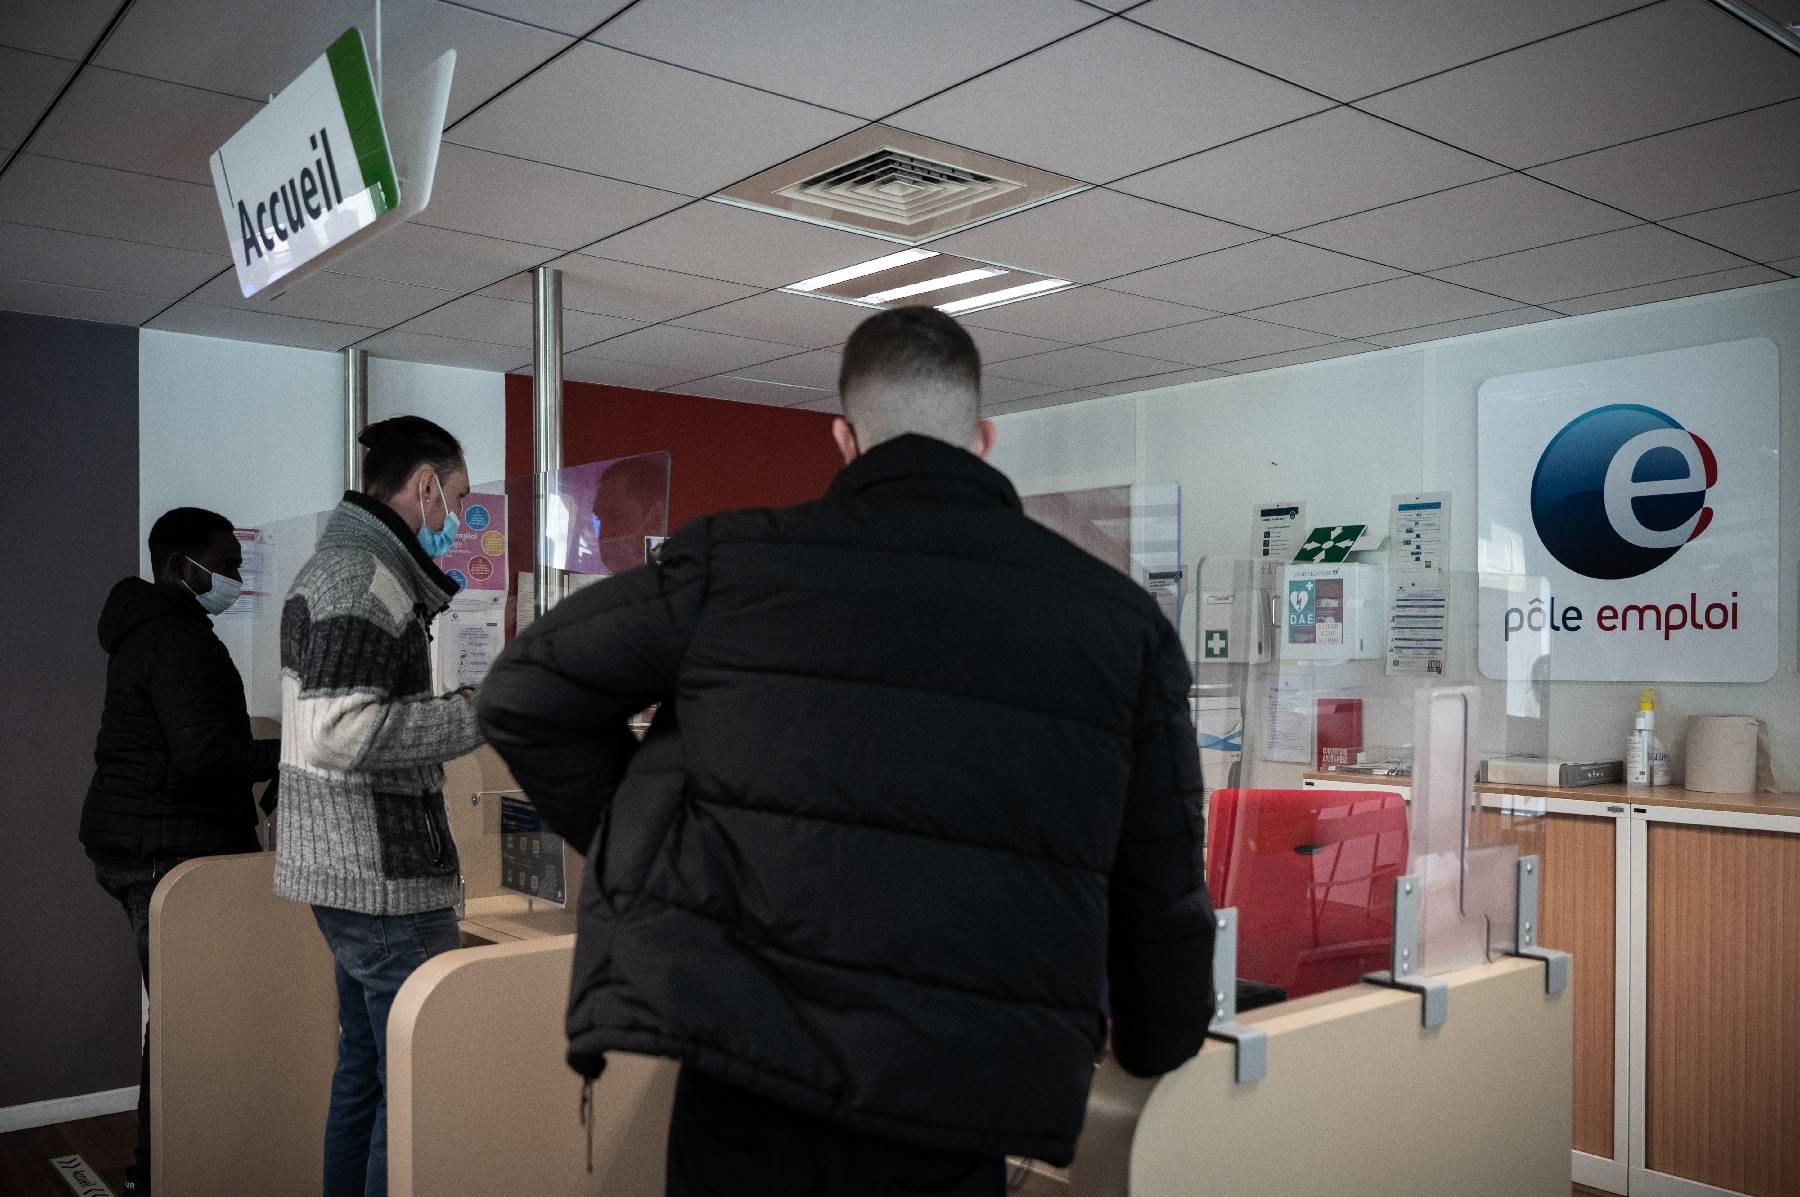 Le nombre de chômeurs en France en baisse de 2,1% en novembre, selon la Dares